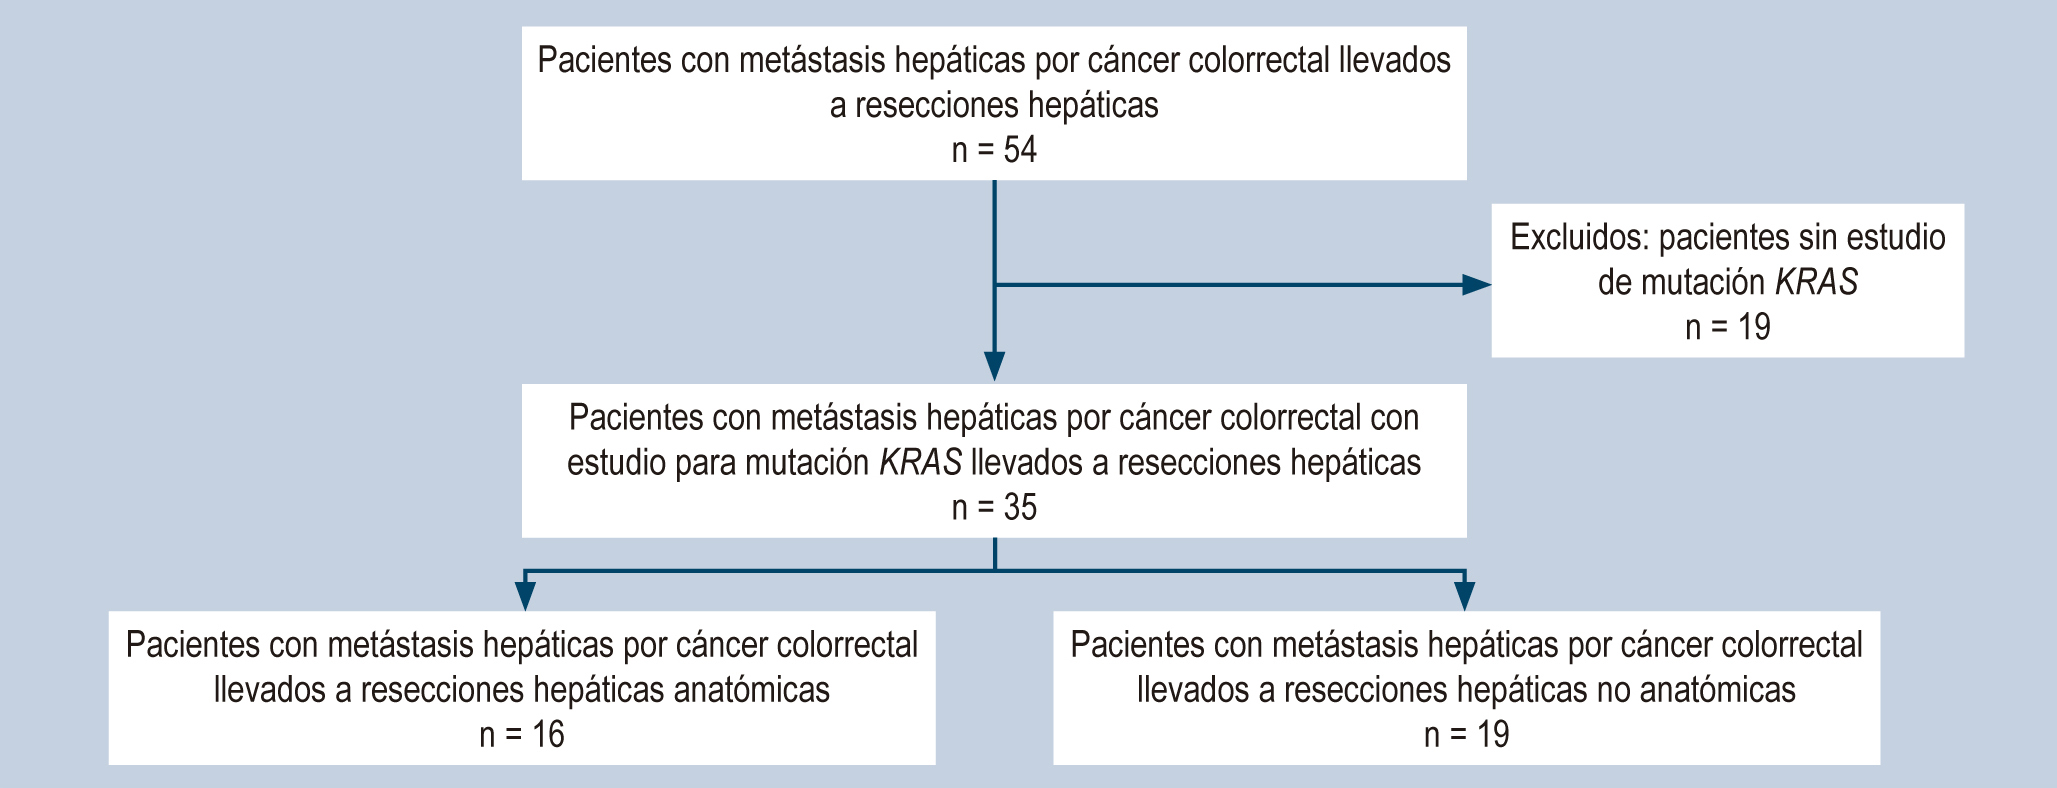 Figura 1. Diagrama de flujo de los pacientes con resecciones hepáticas por cáncer colorrectal 2009-2013. Elaborada por los autores